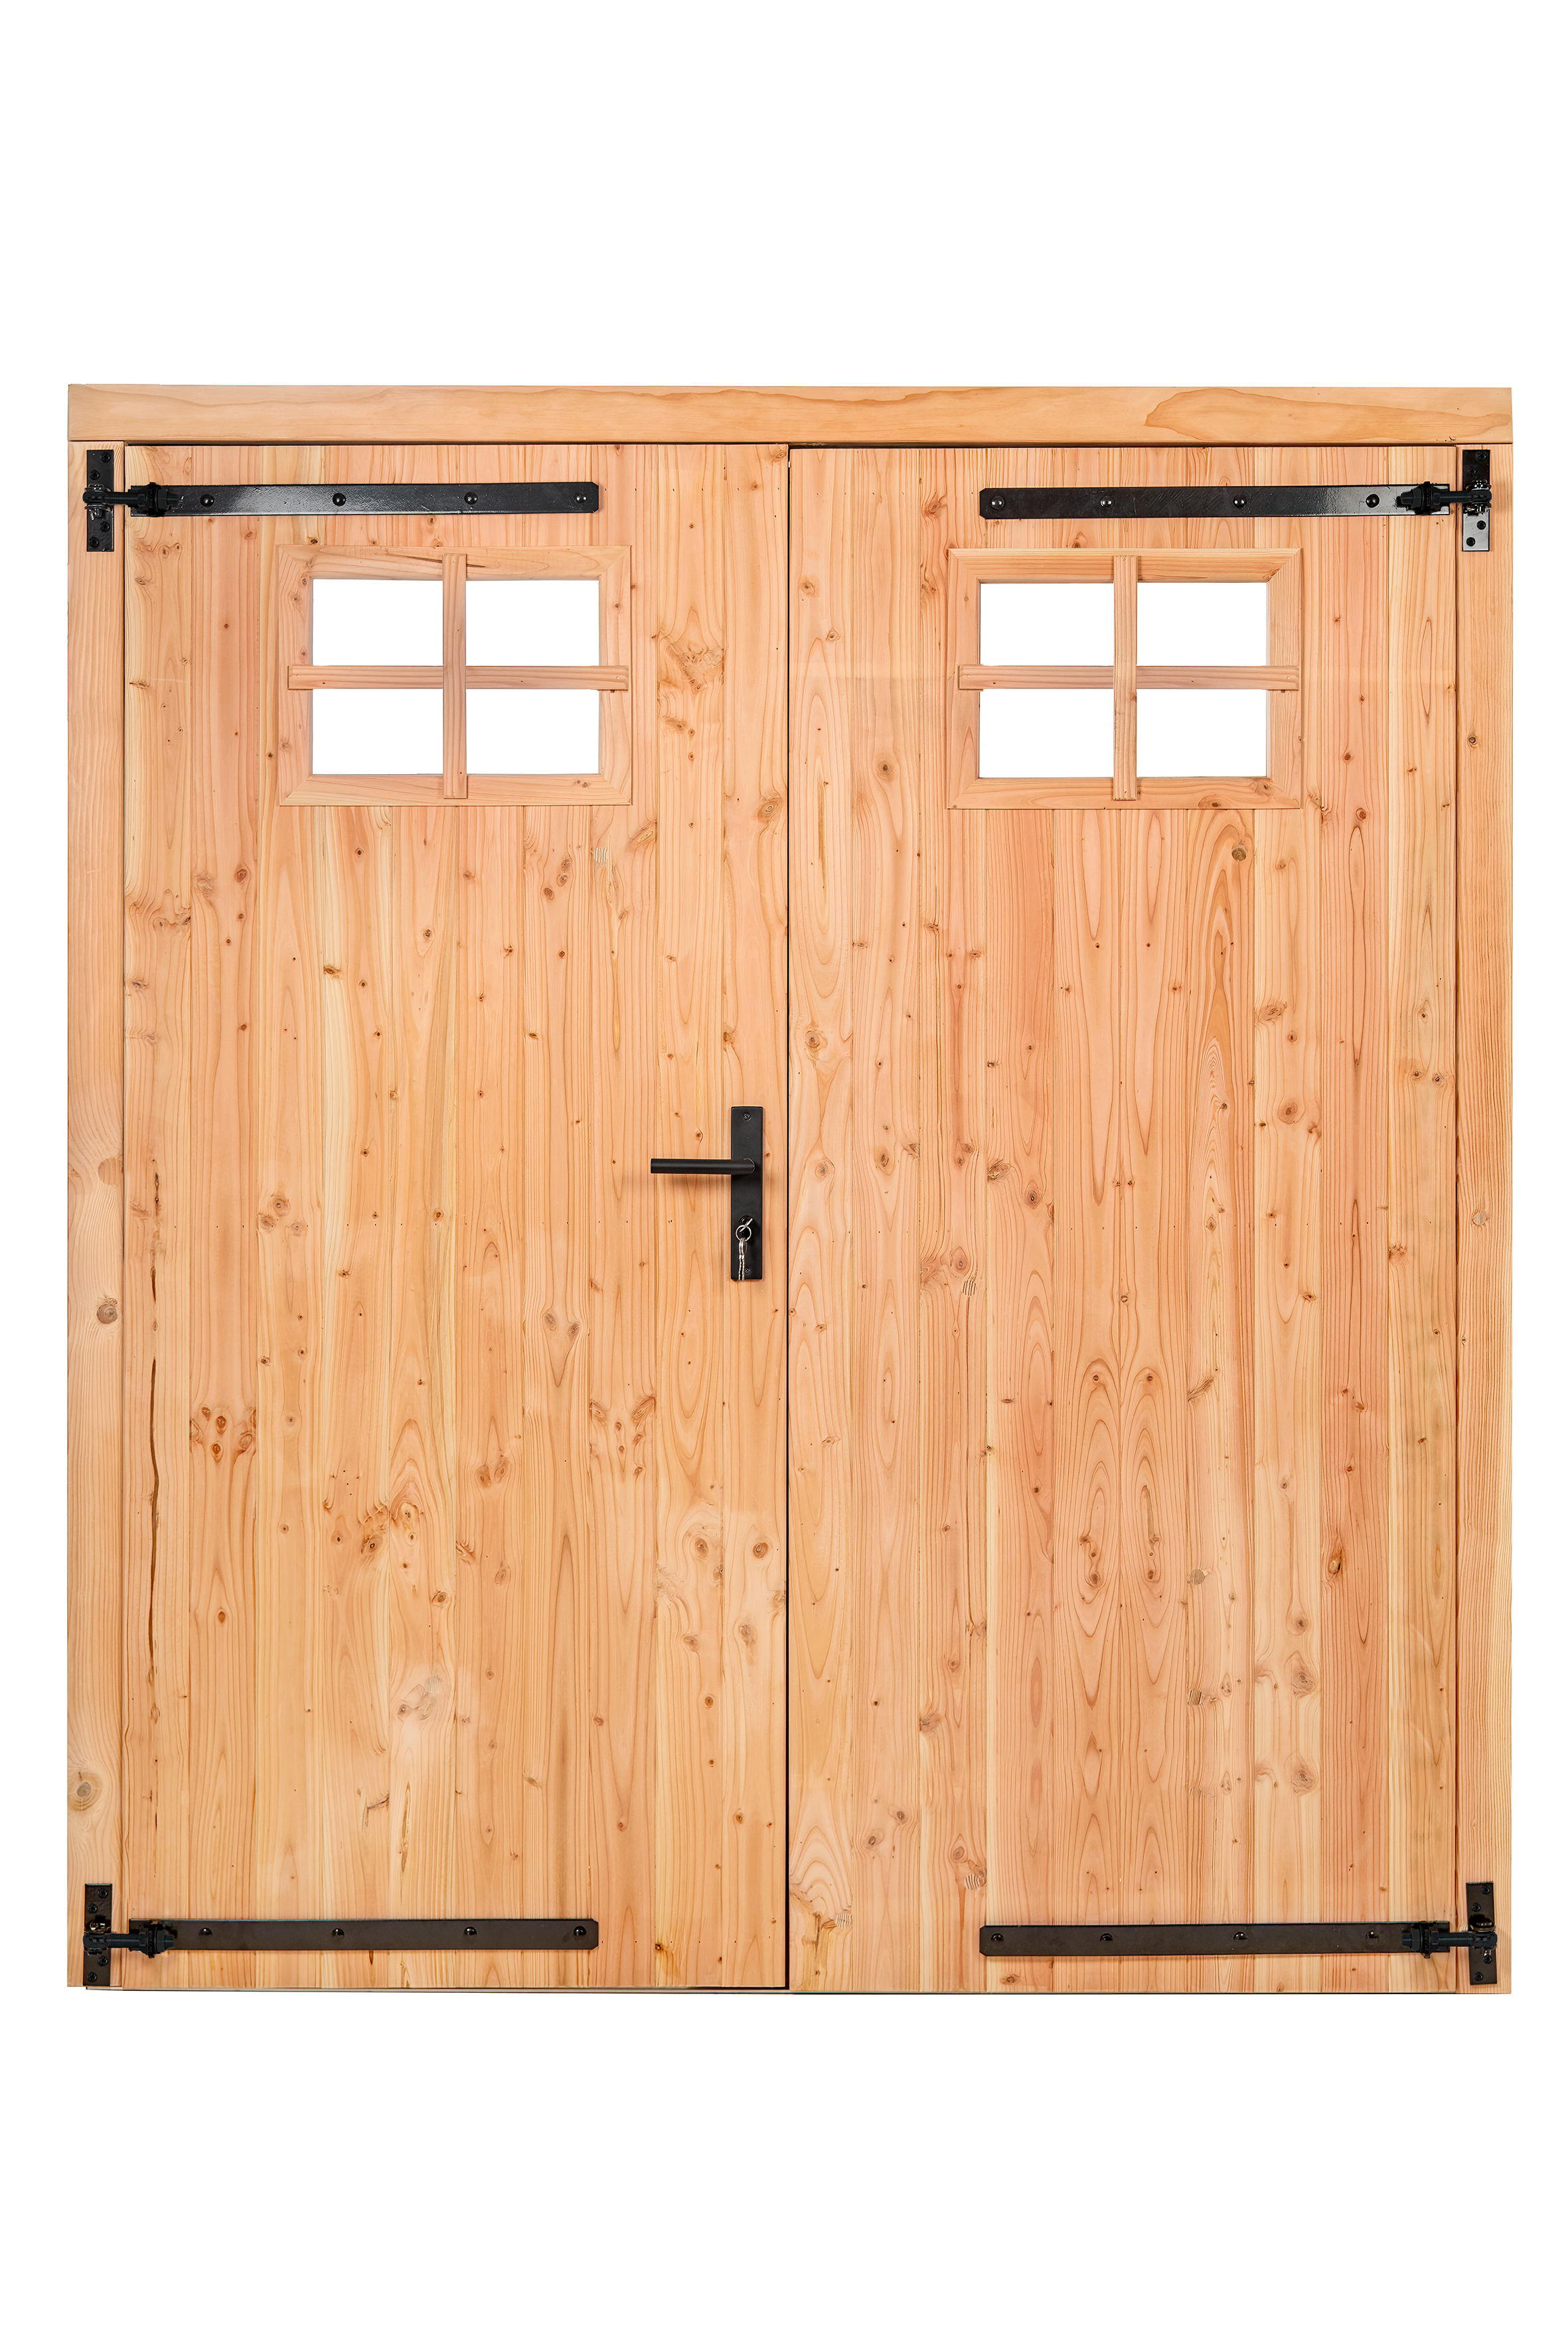 Douglas dubbele dichte deur met klein raam B1850xH2050mm buitenmaat, linksdraaiend